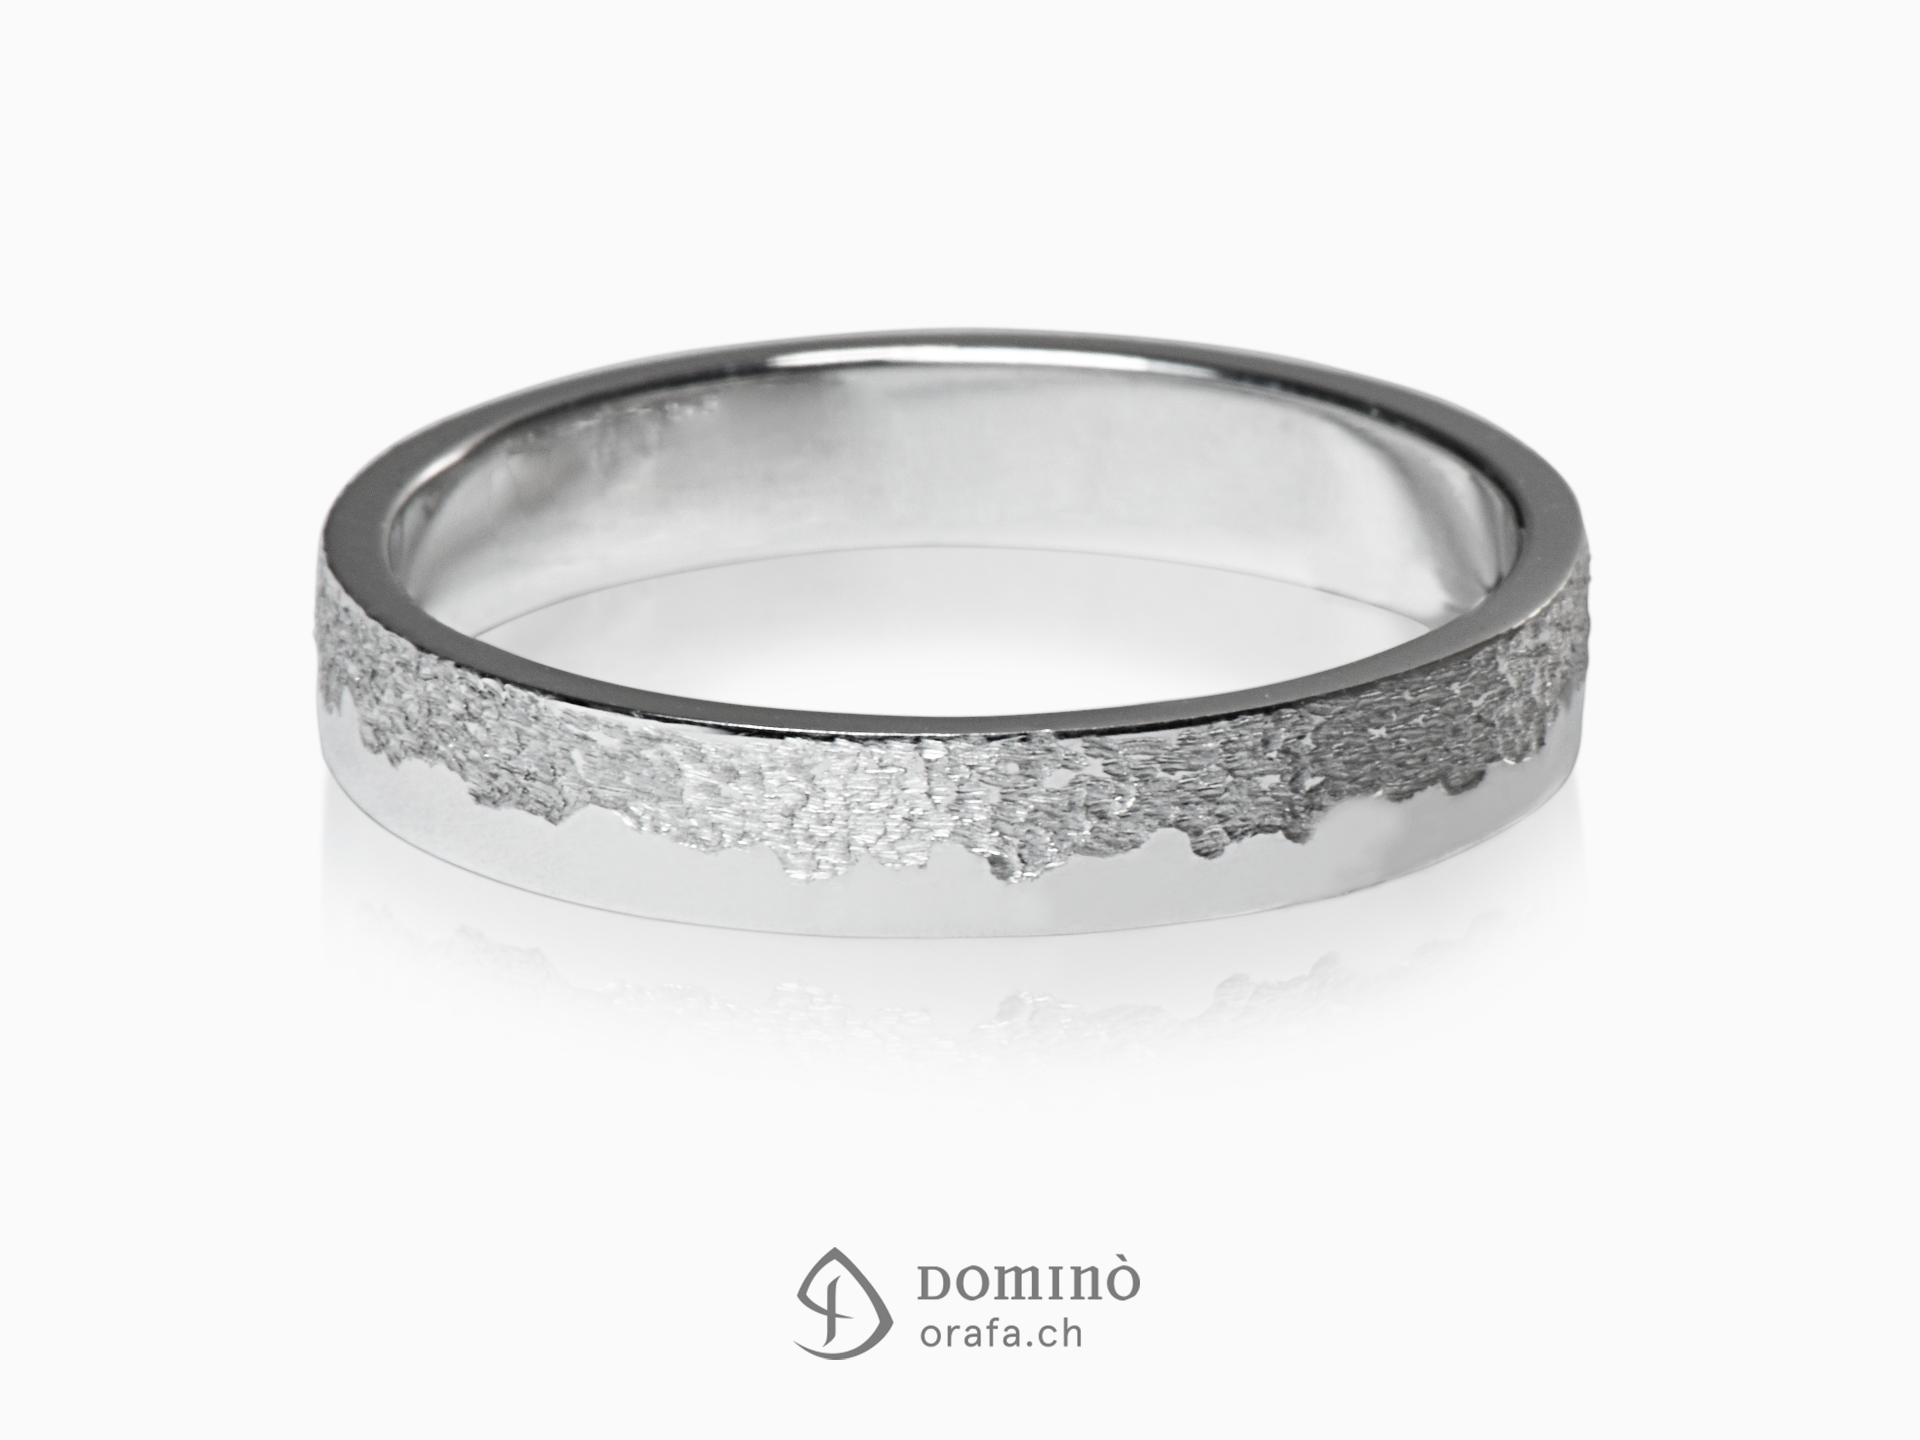 Sabbia/polished irregular rings